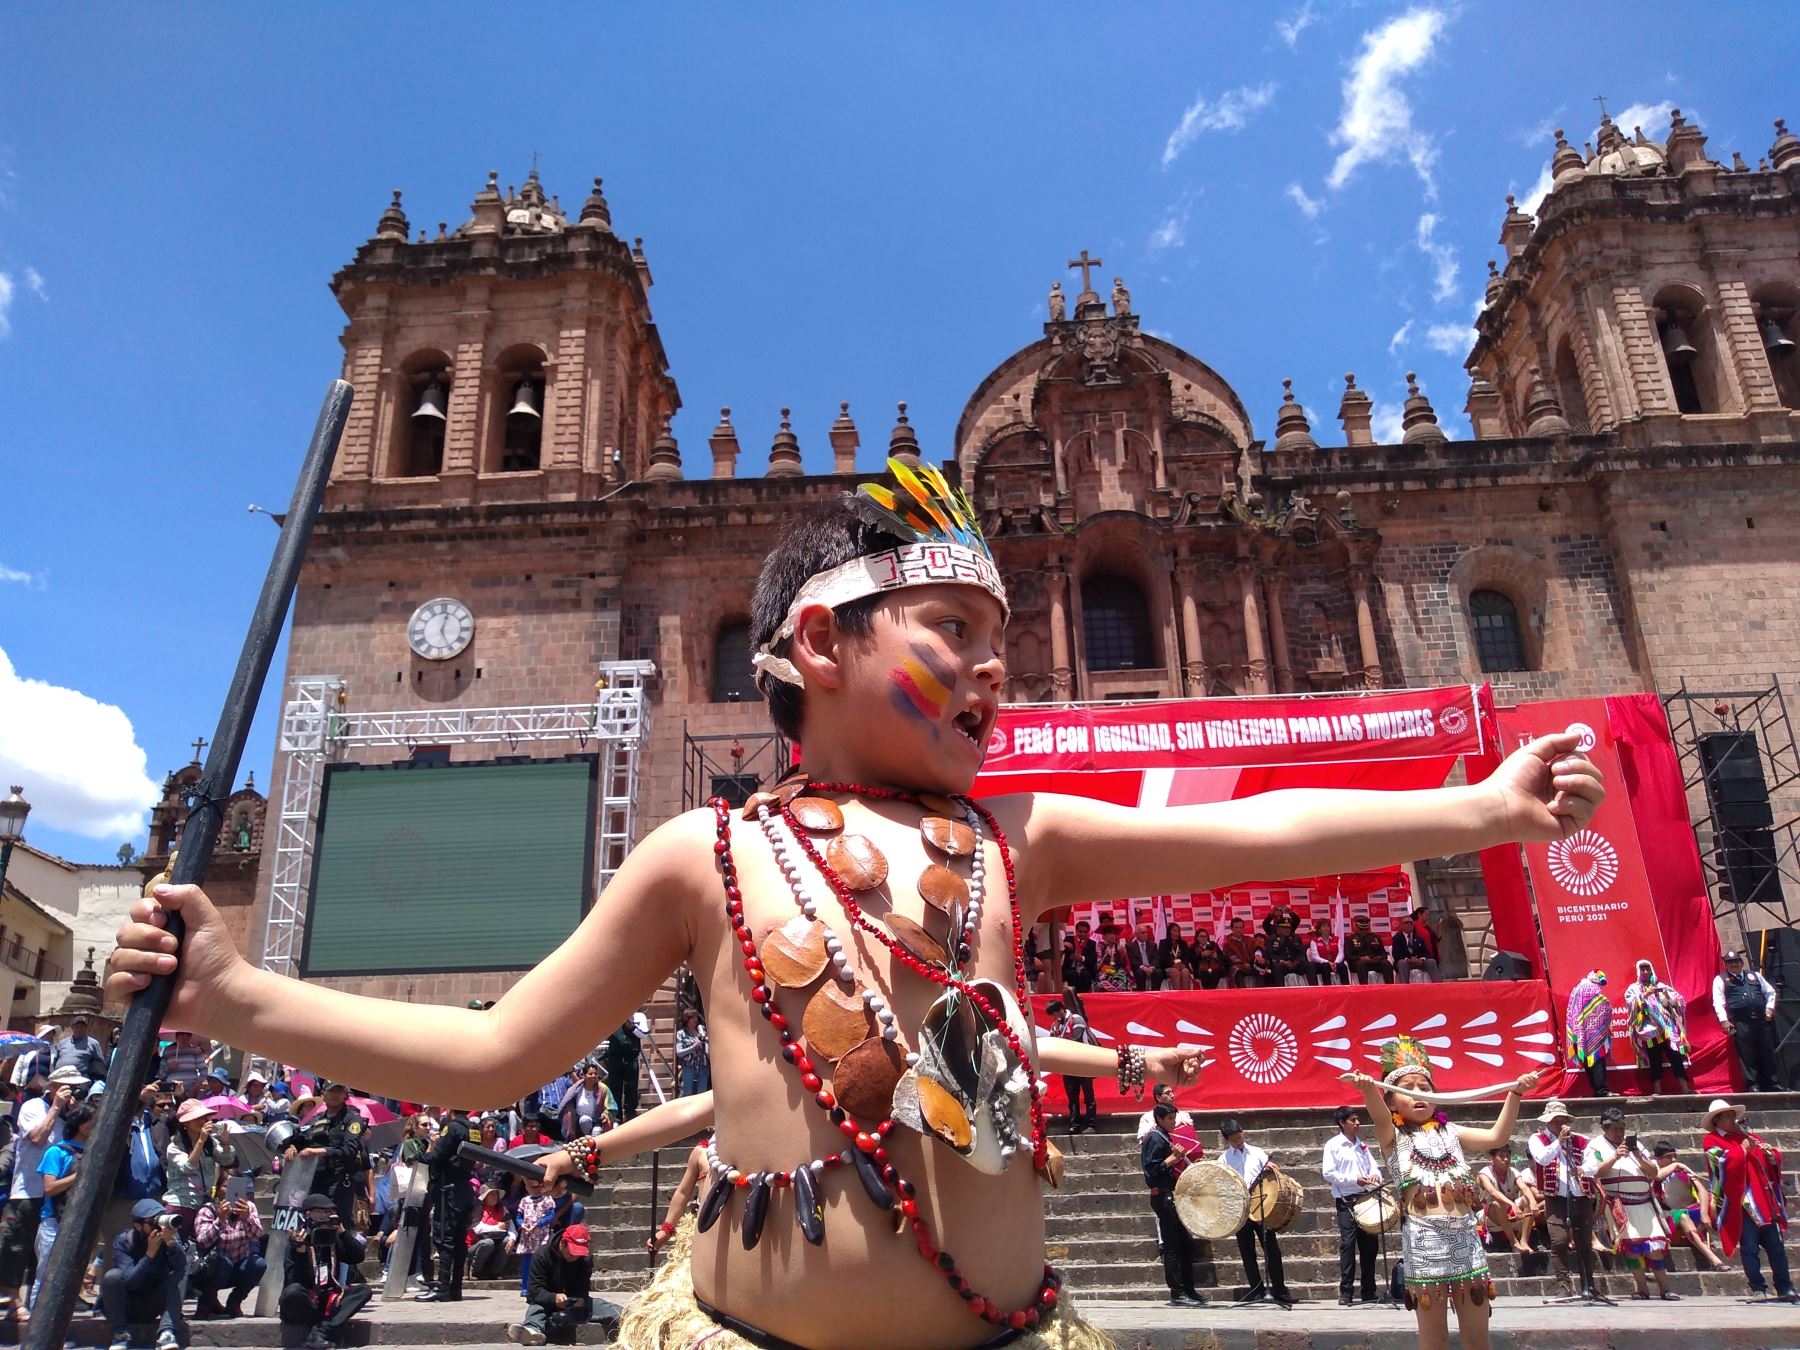 La ministra de la Mujer y Poblaciones Vulnerables, Ana María Mendieta, participó en el lanzamiento de la Agenda Bicentenario en el Cusco. Foto: ANDINA/Percy Hurtado